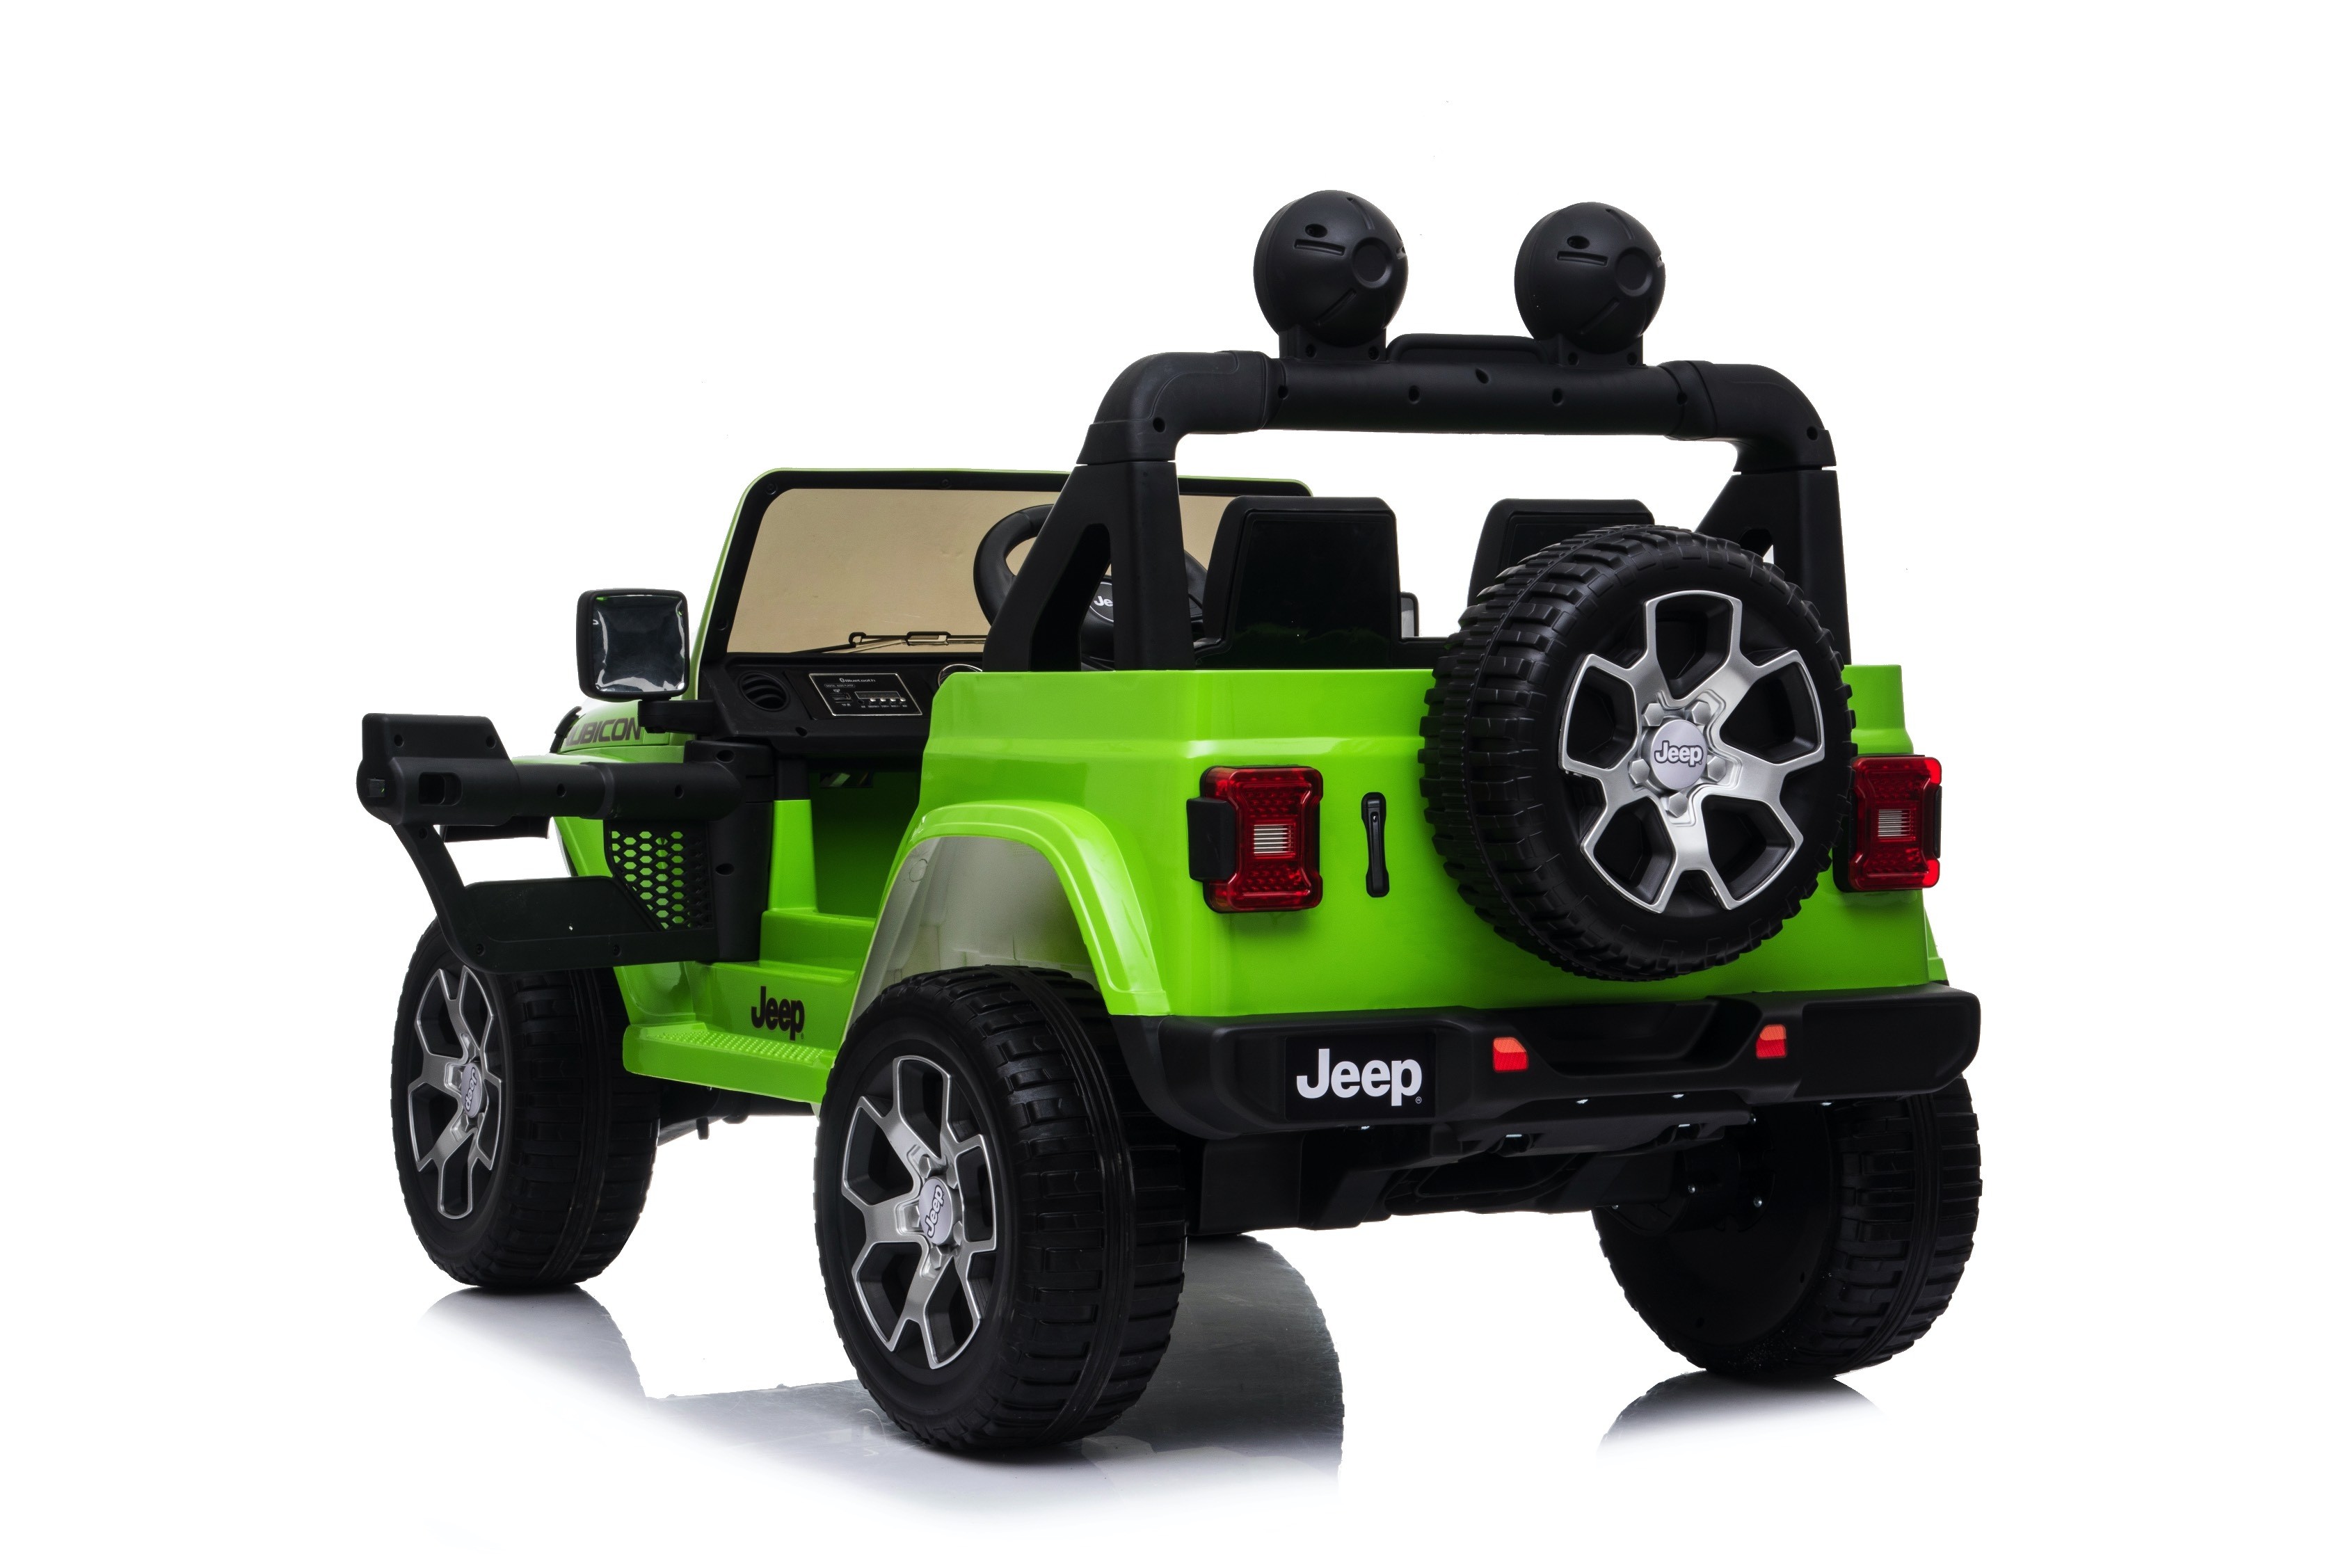 TOYSCAR electronic way to drive Auto Macchina Elettrica Jeep Wrangler Rubicon 12V per Bambini Porte apribili con Telecomando Full Accessori Green